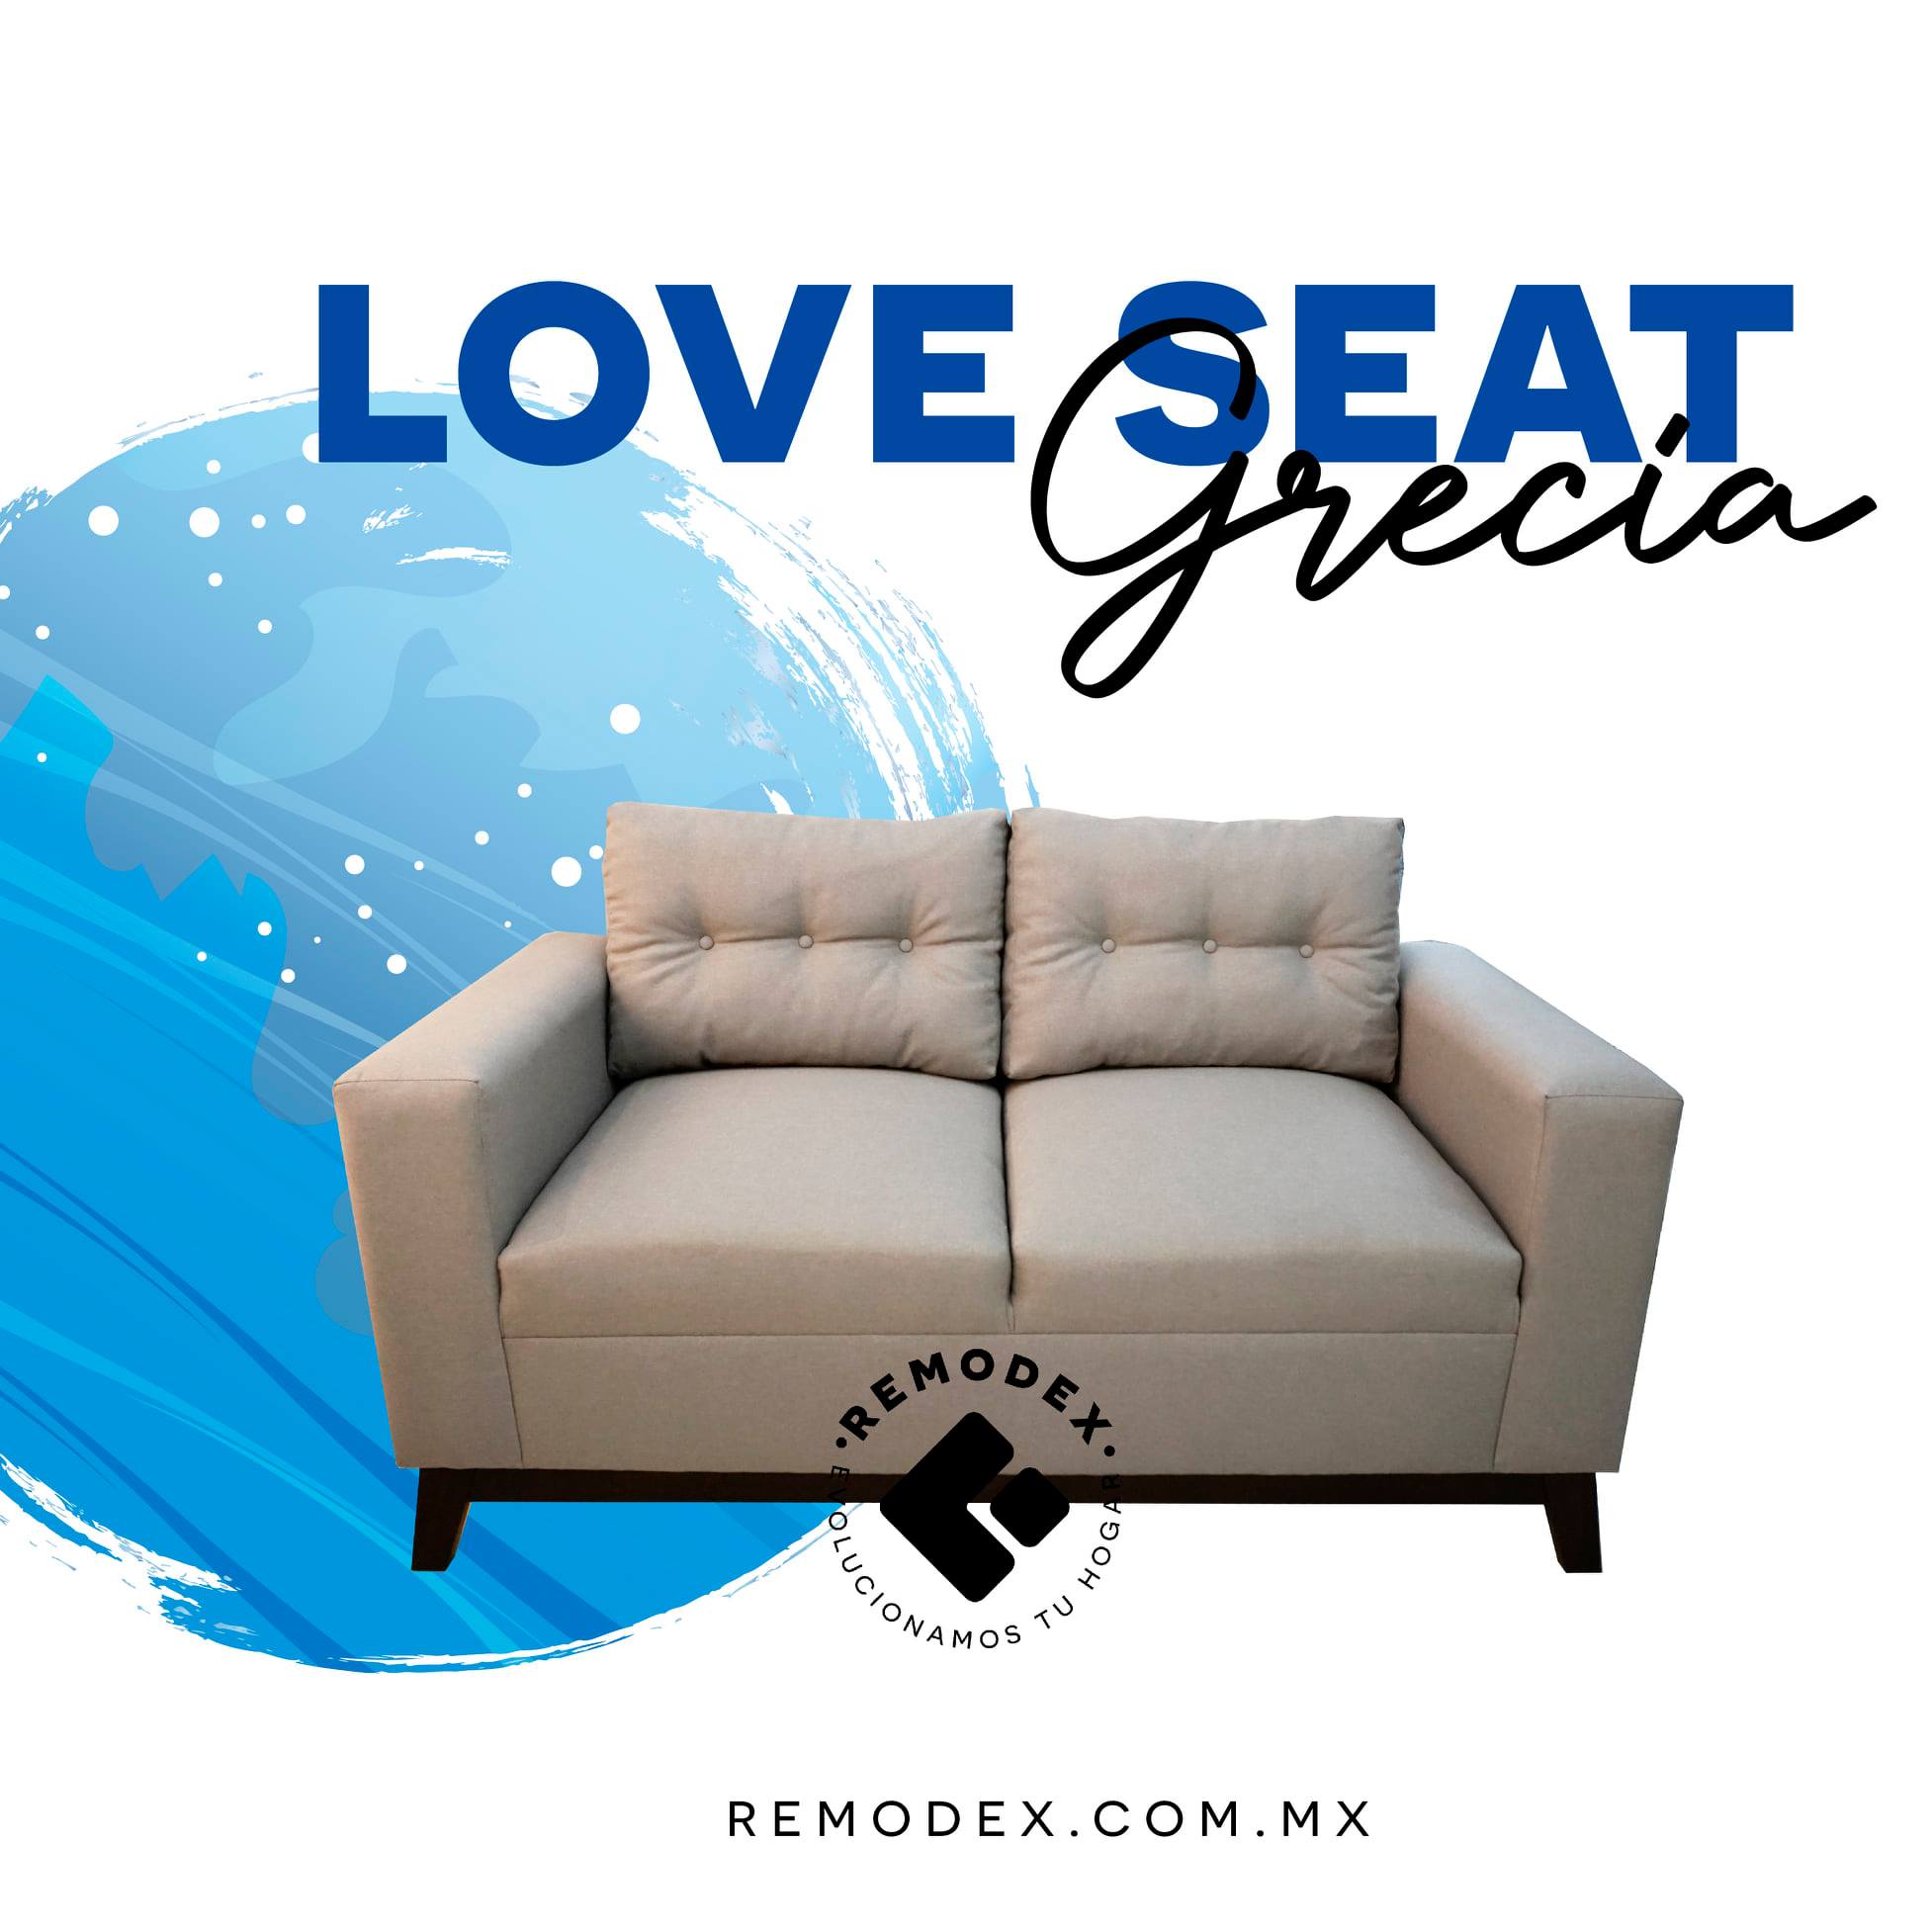 LOVE SEAT GRECIA